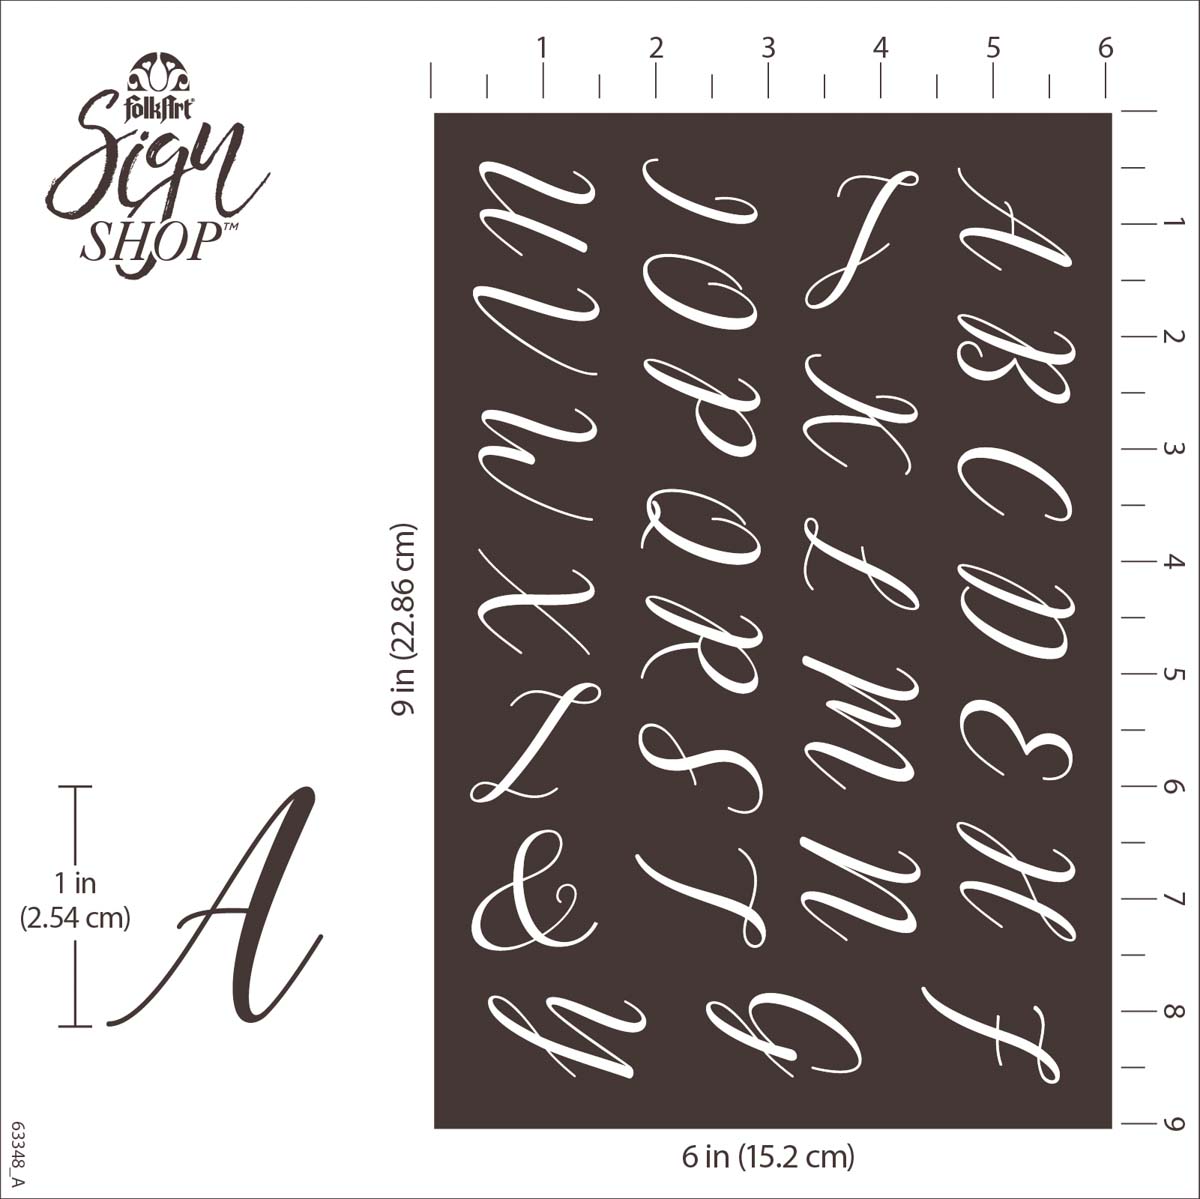 FolkArt ® Sign Shop™ Mesh Stencil - Script Letter Set, 2 pc. - 63348